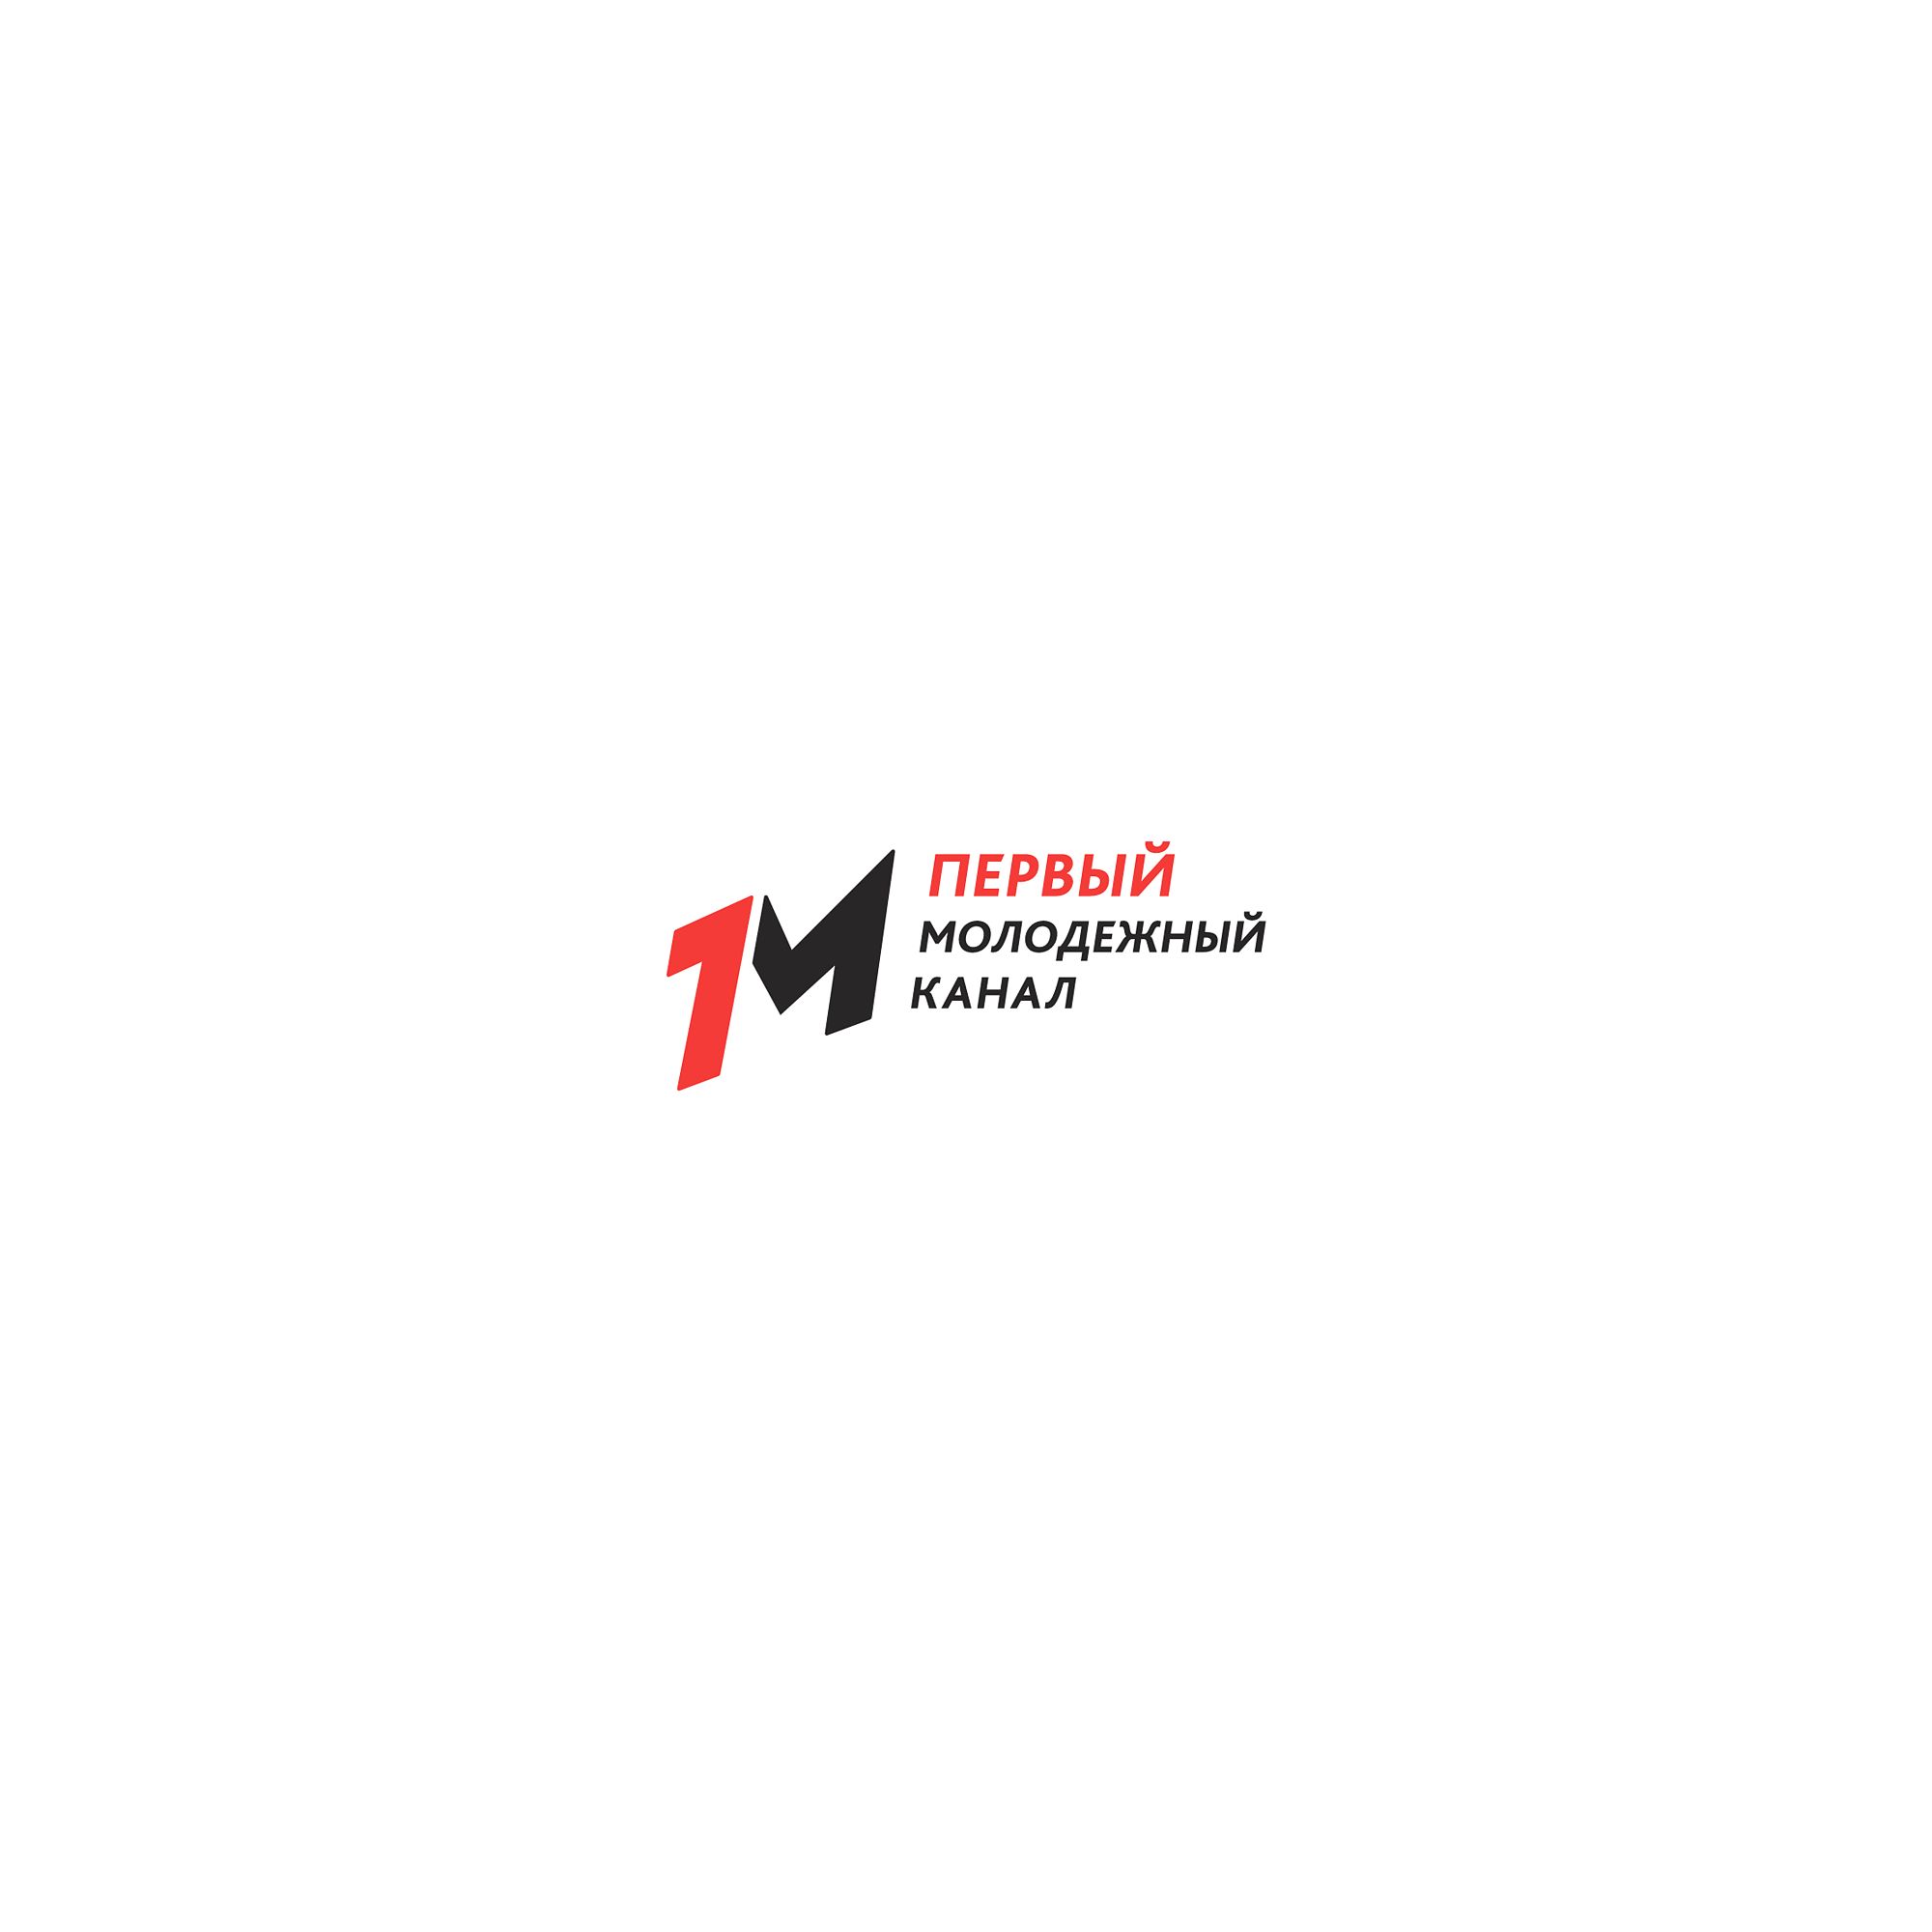 Логотип для Первый молодежный канал - дизайнер nuttale